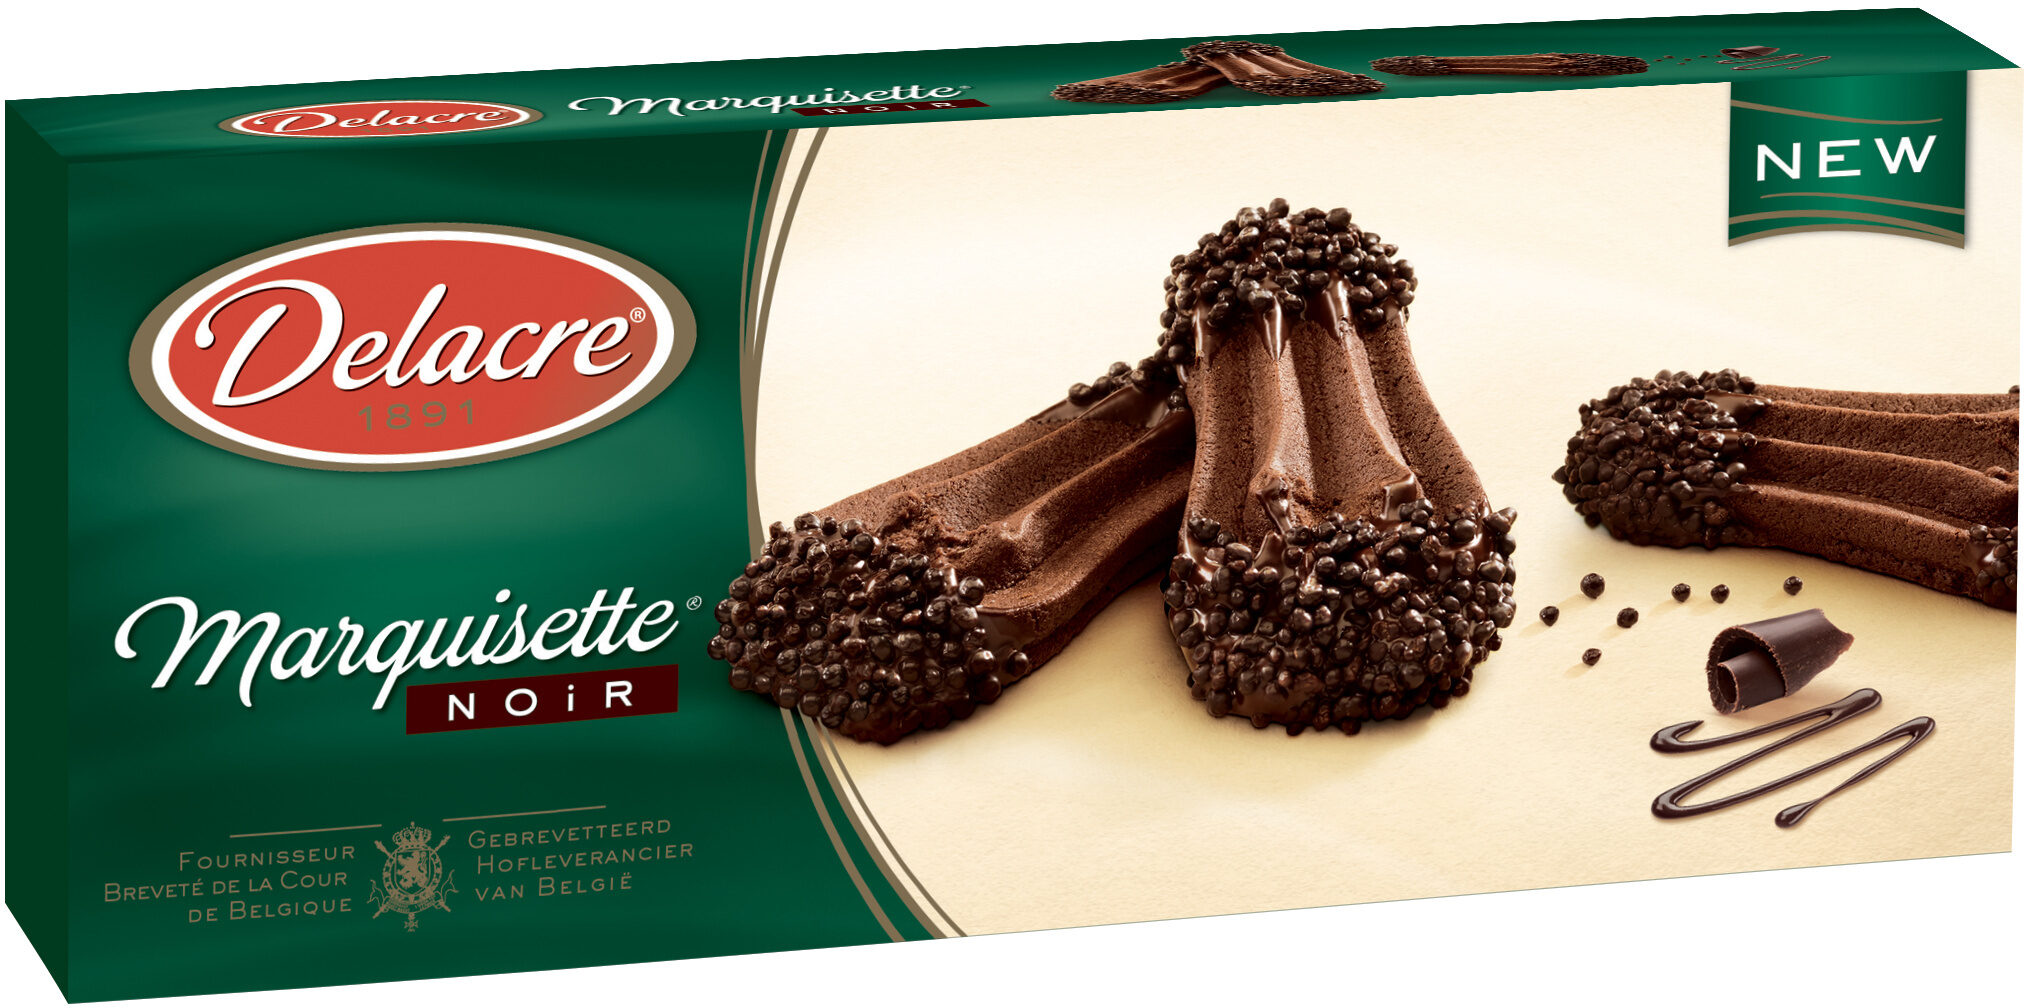 Delacre marquisettes biscuits chocolat noir - Produit